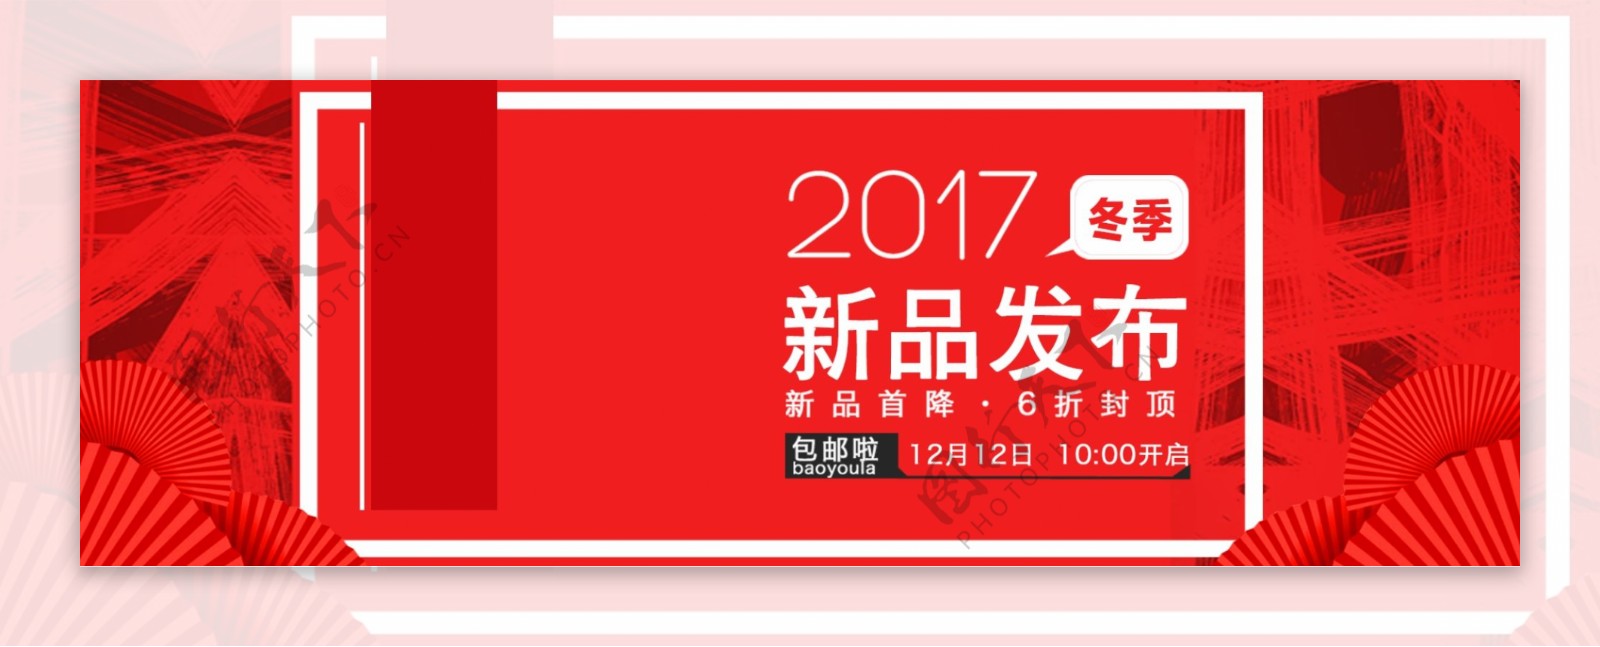 天猫淘宝上新活动促销海报banner